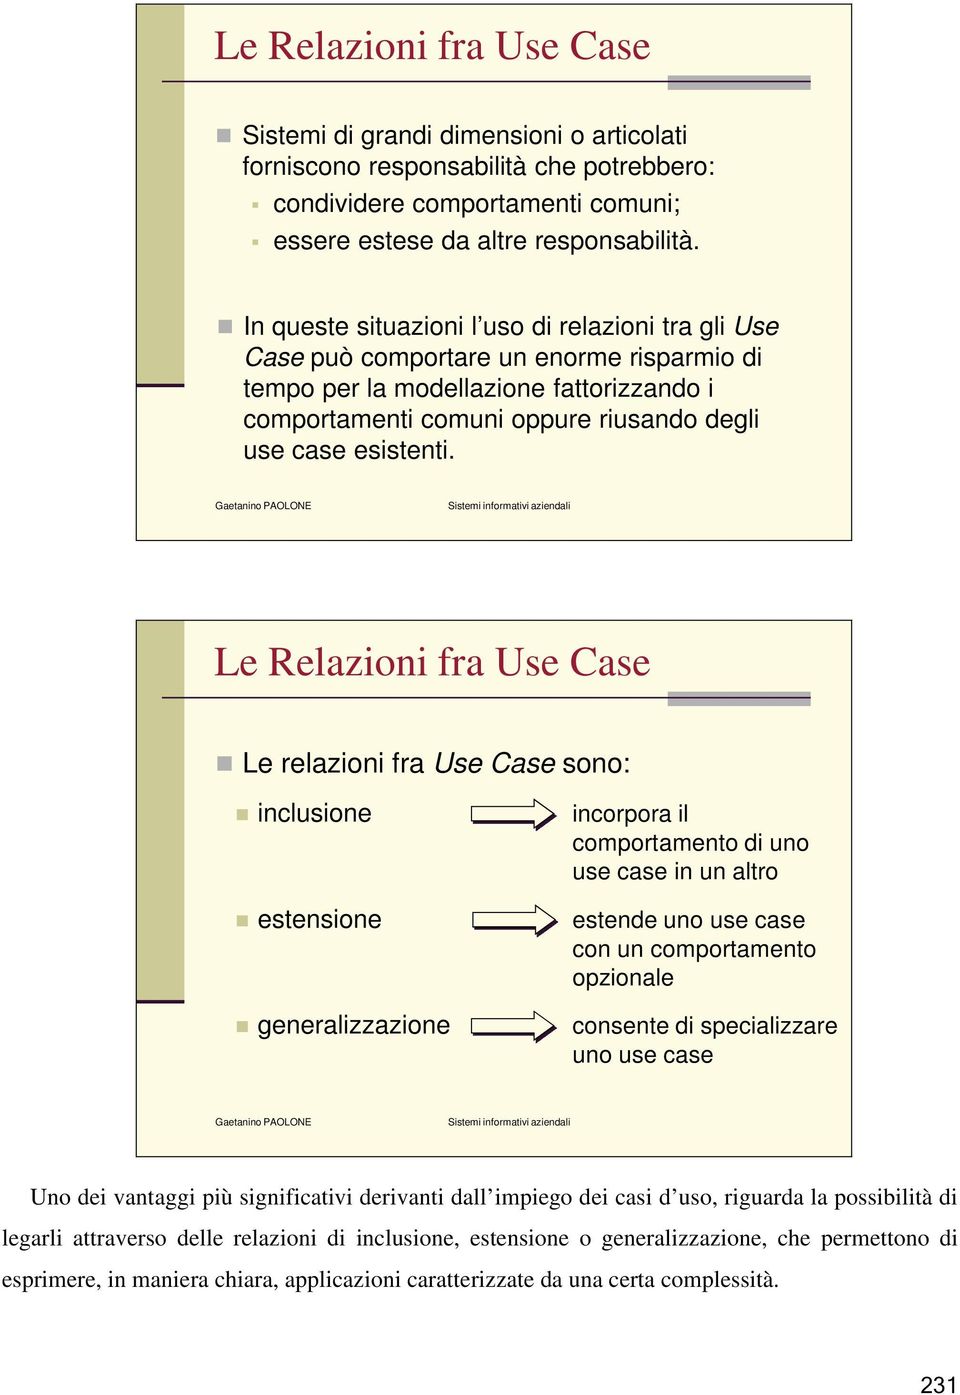 Le Relazioni fra Use Case Le relazioni fra Use Case sono: inclusione estensione generalizzazione incorpora il comportamento di uno use case in un altro estende uno use case con un comportamento